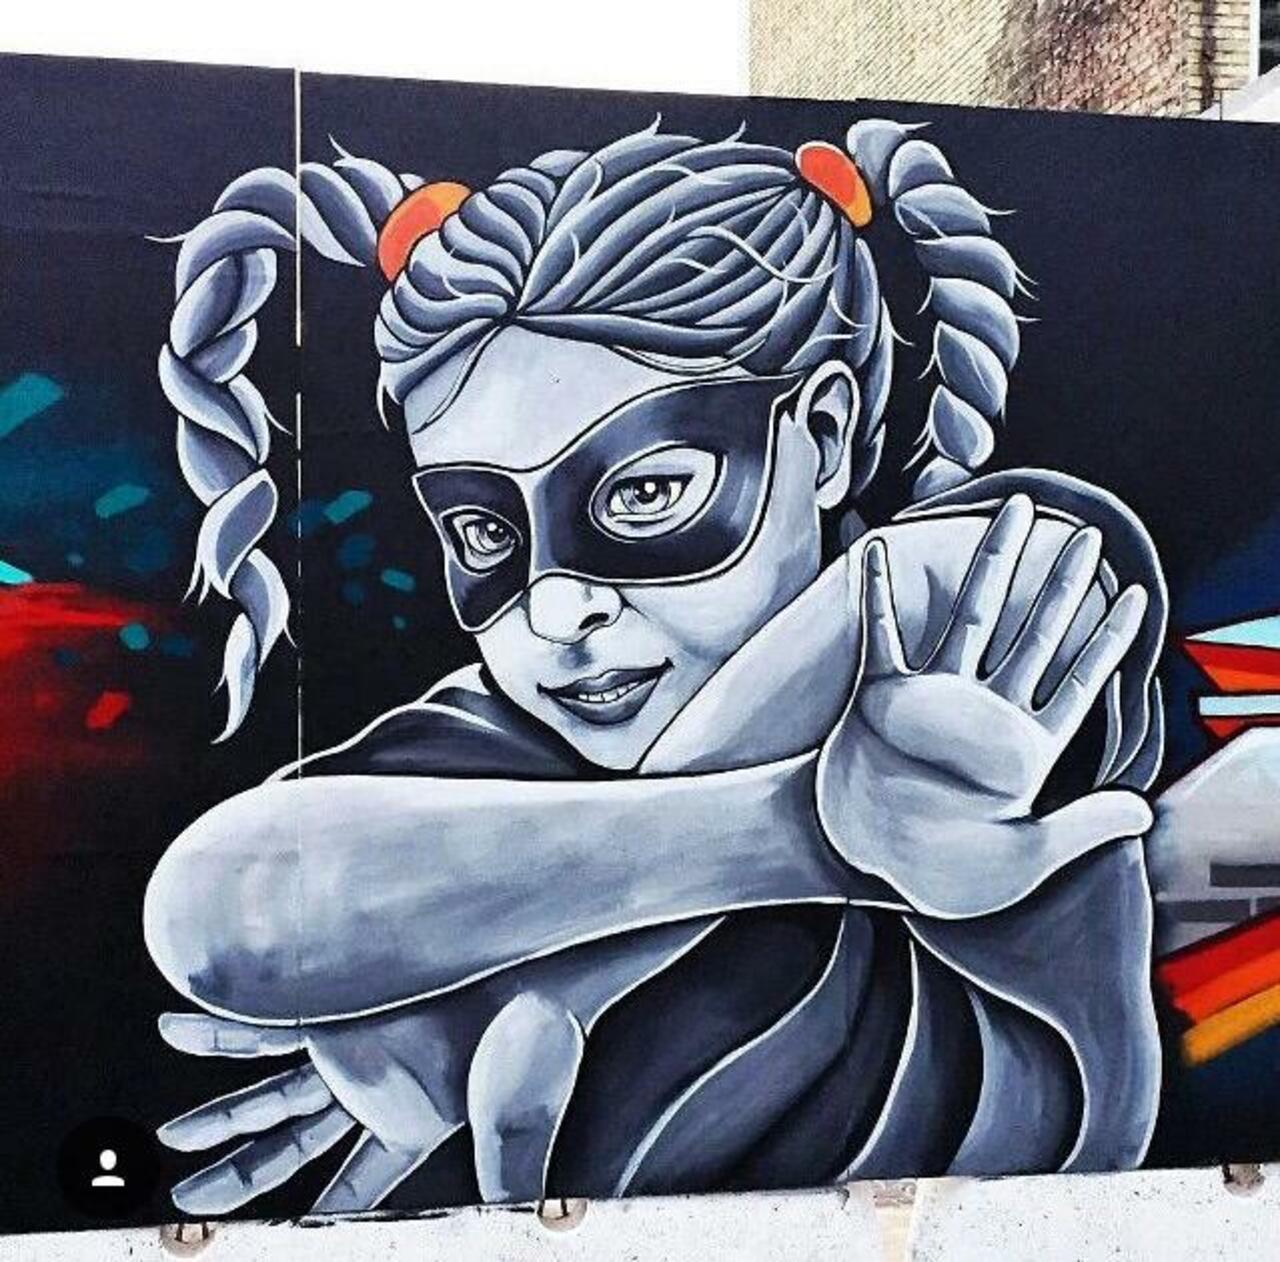 Street Art by Stinehvid 

#art #graffiti #mural #streetart http://t.co/GdbXEjjE19